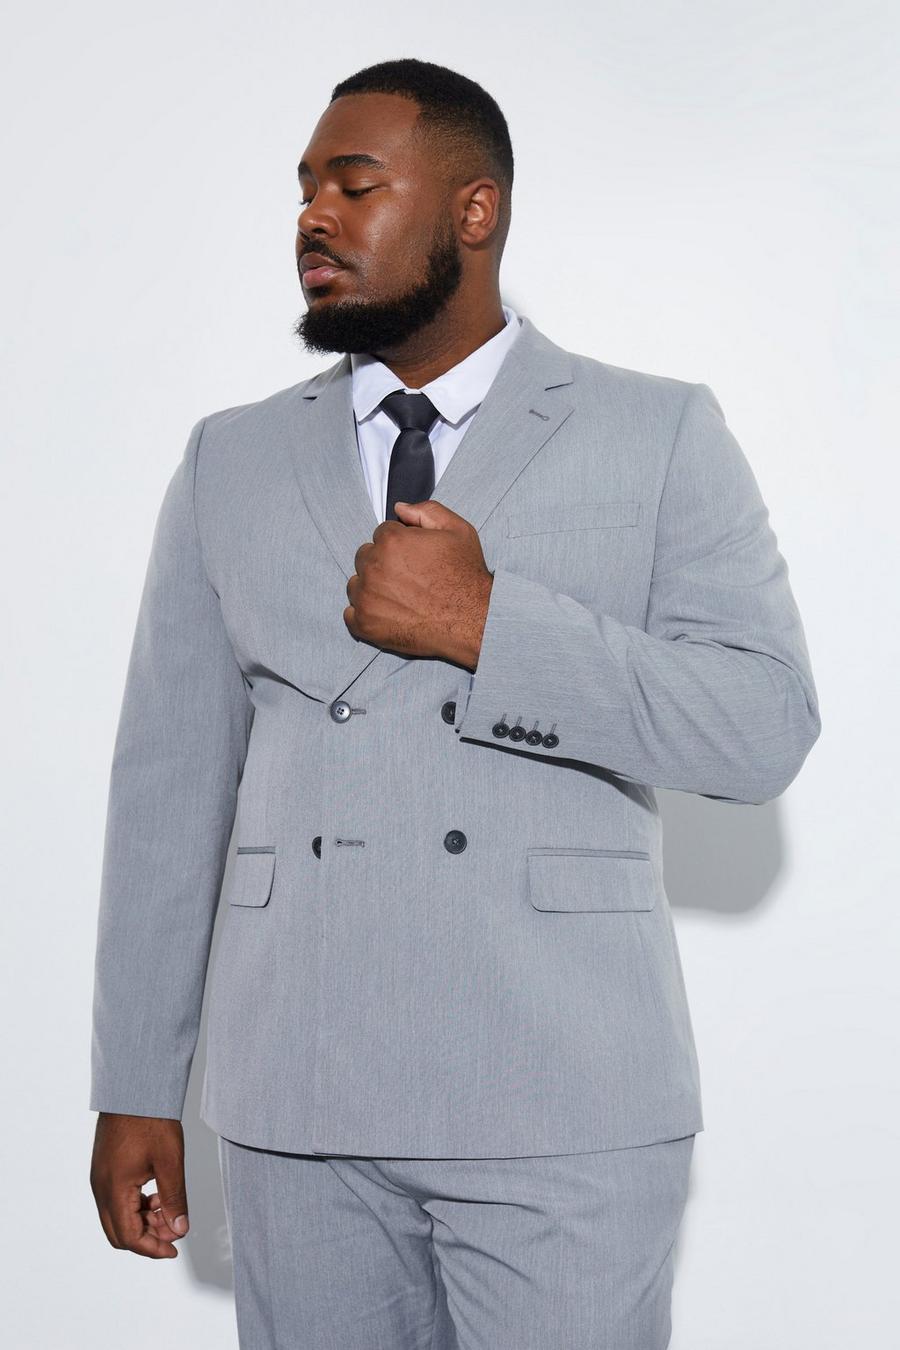 אפור grigio ז'קט חליפה בגזרה צרה עם דשים כפולים, מידות גדולות